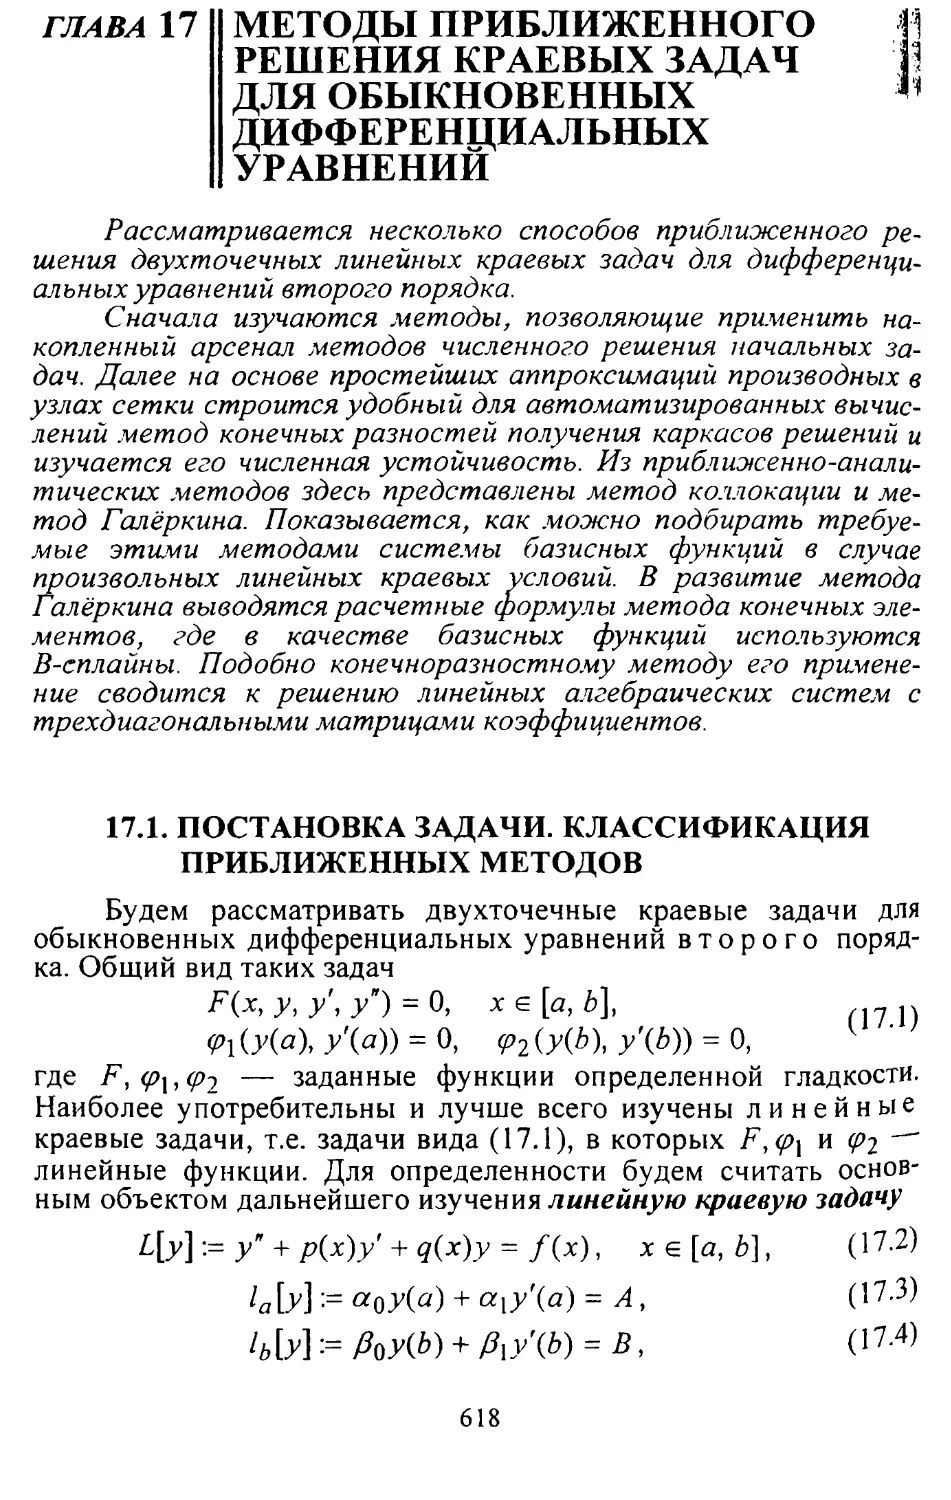 Глава 17. Методы приближенного решения краевых задач для обыкновенных дифференциальных уравнений